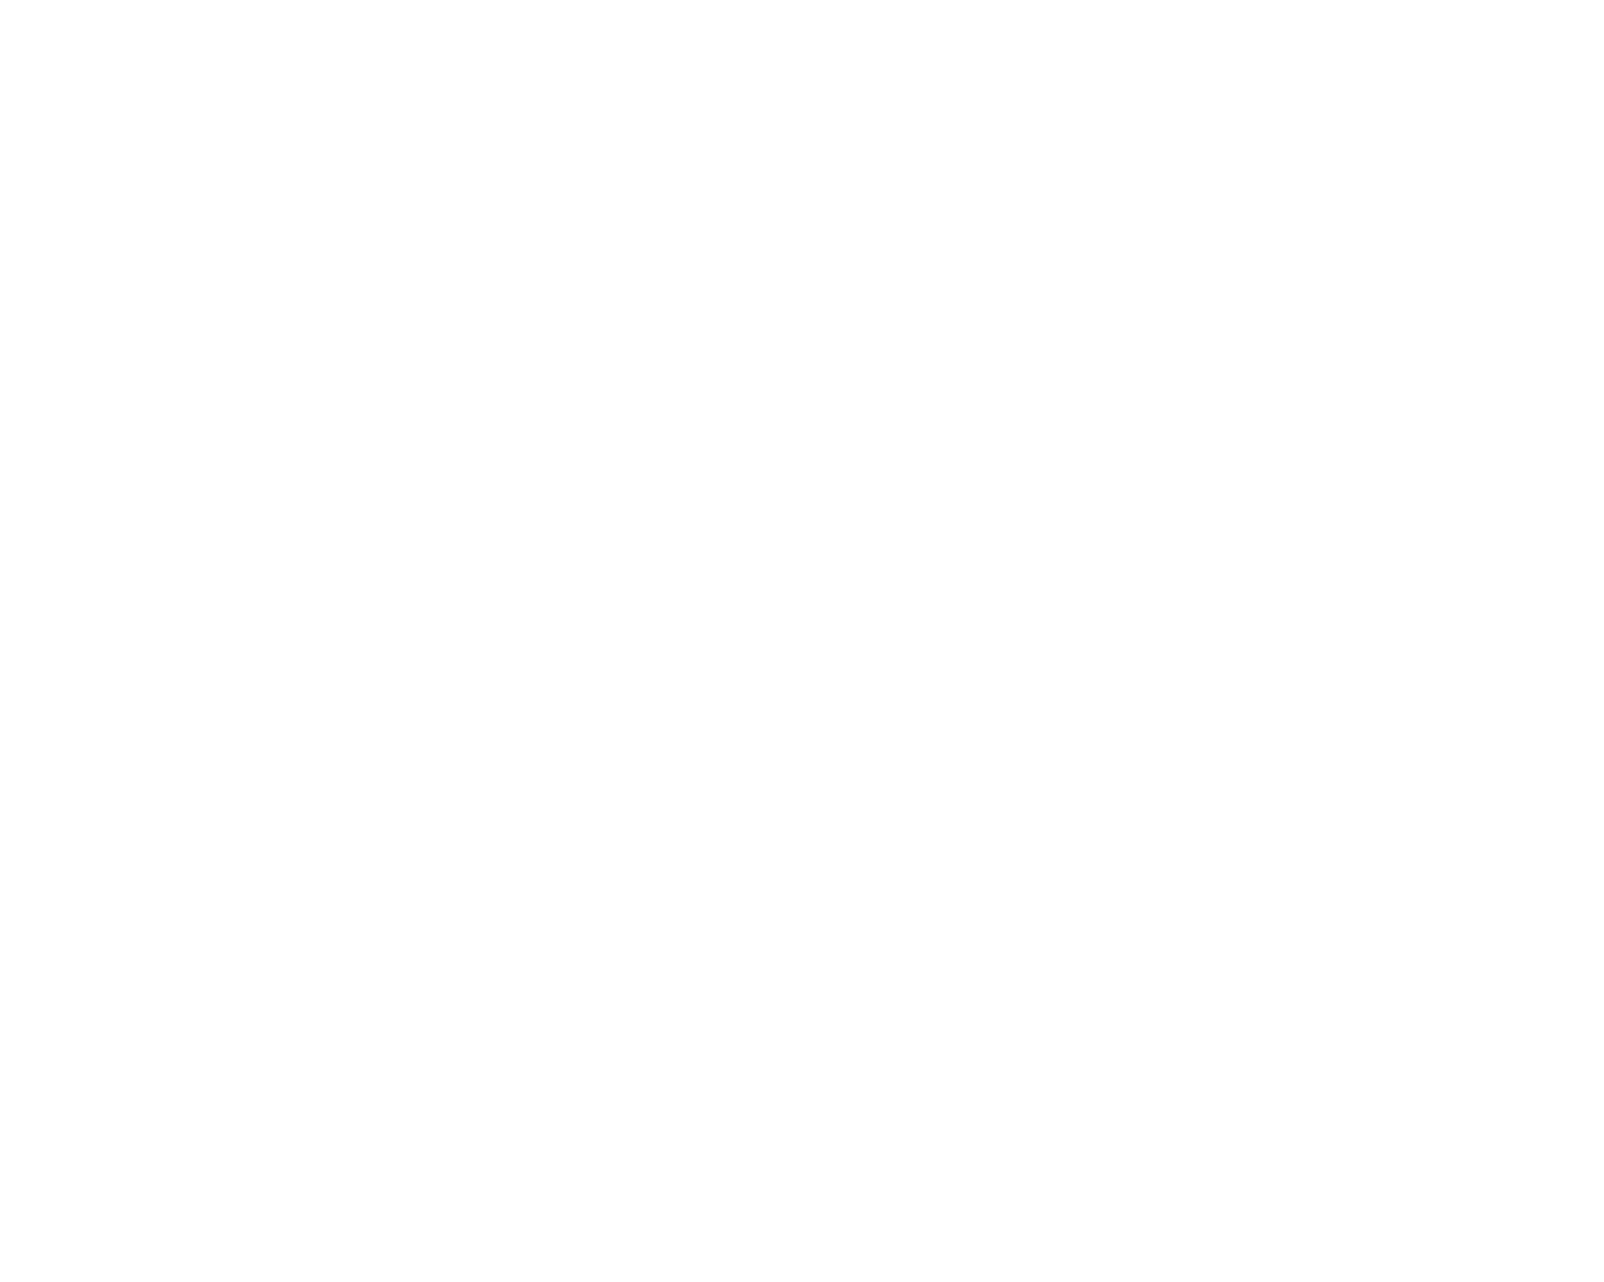 Анастасия Силкина, Расплывающийся кубик, 2011, металл, пвх, самоклящаяся виниловая пленка, 200 х 200 х 200 см